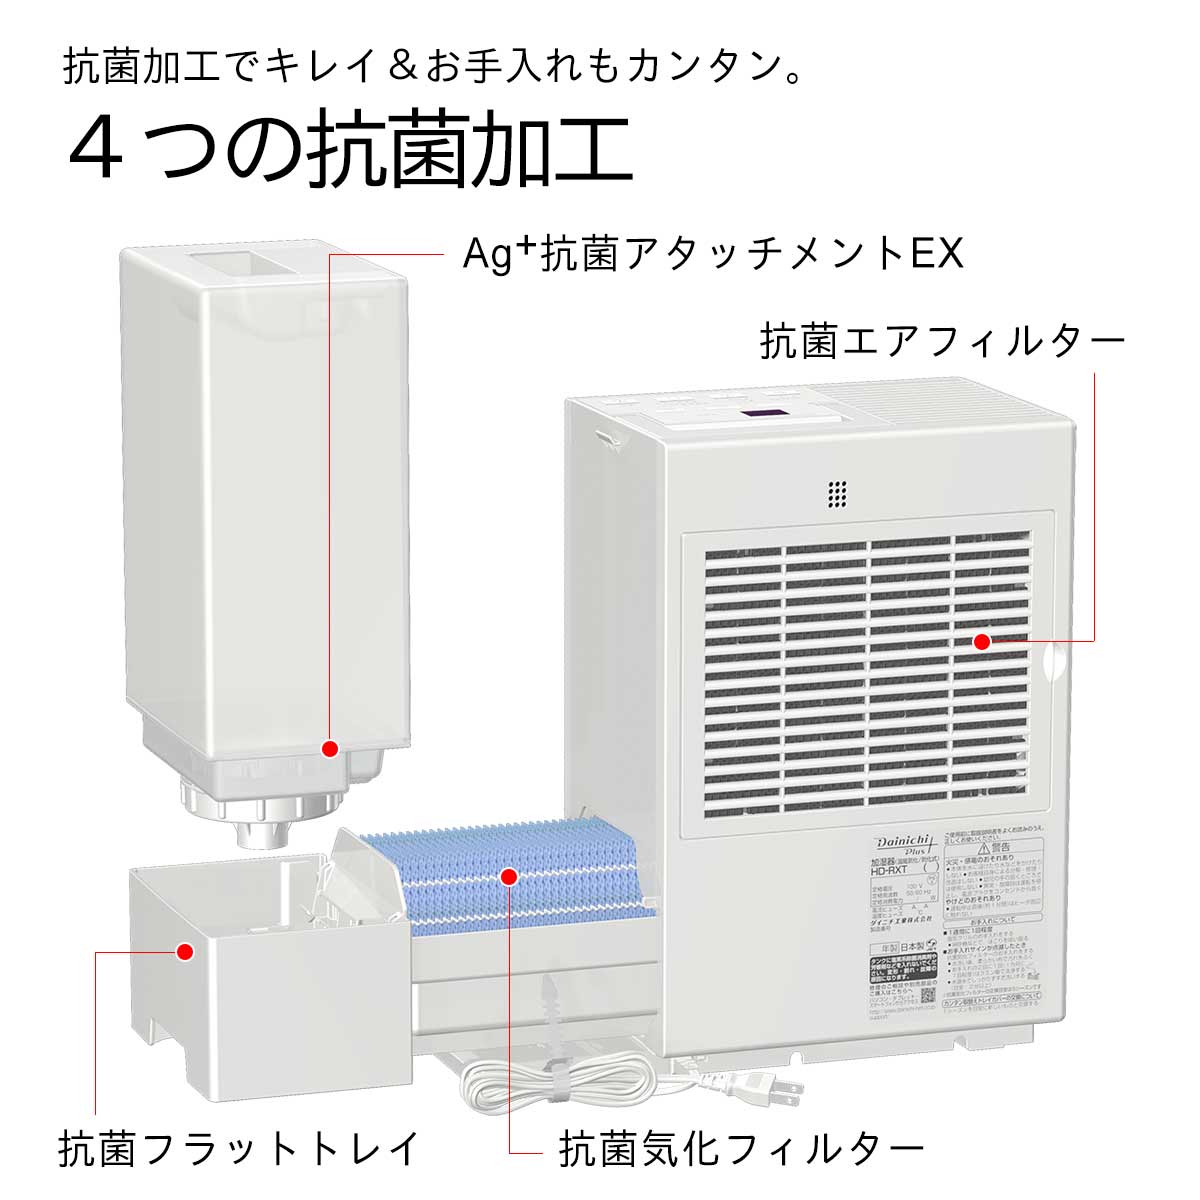 Dainichi Plus HD-RXT521(W) WHITE - 加湿器